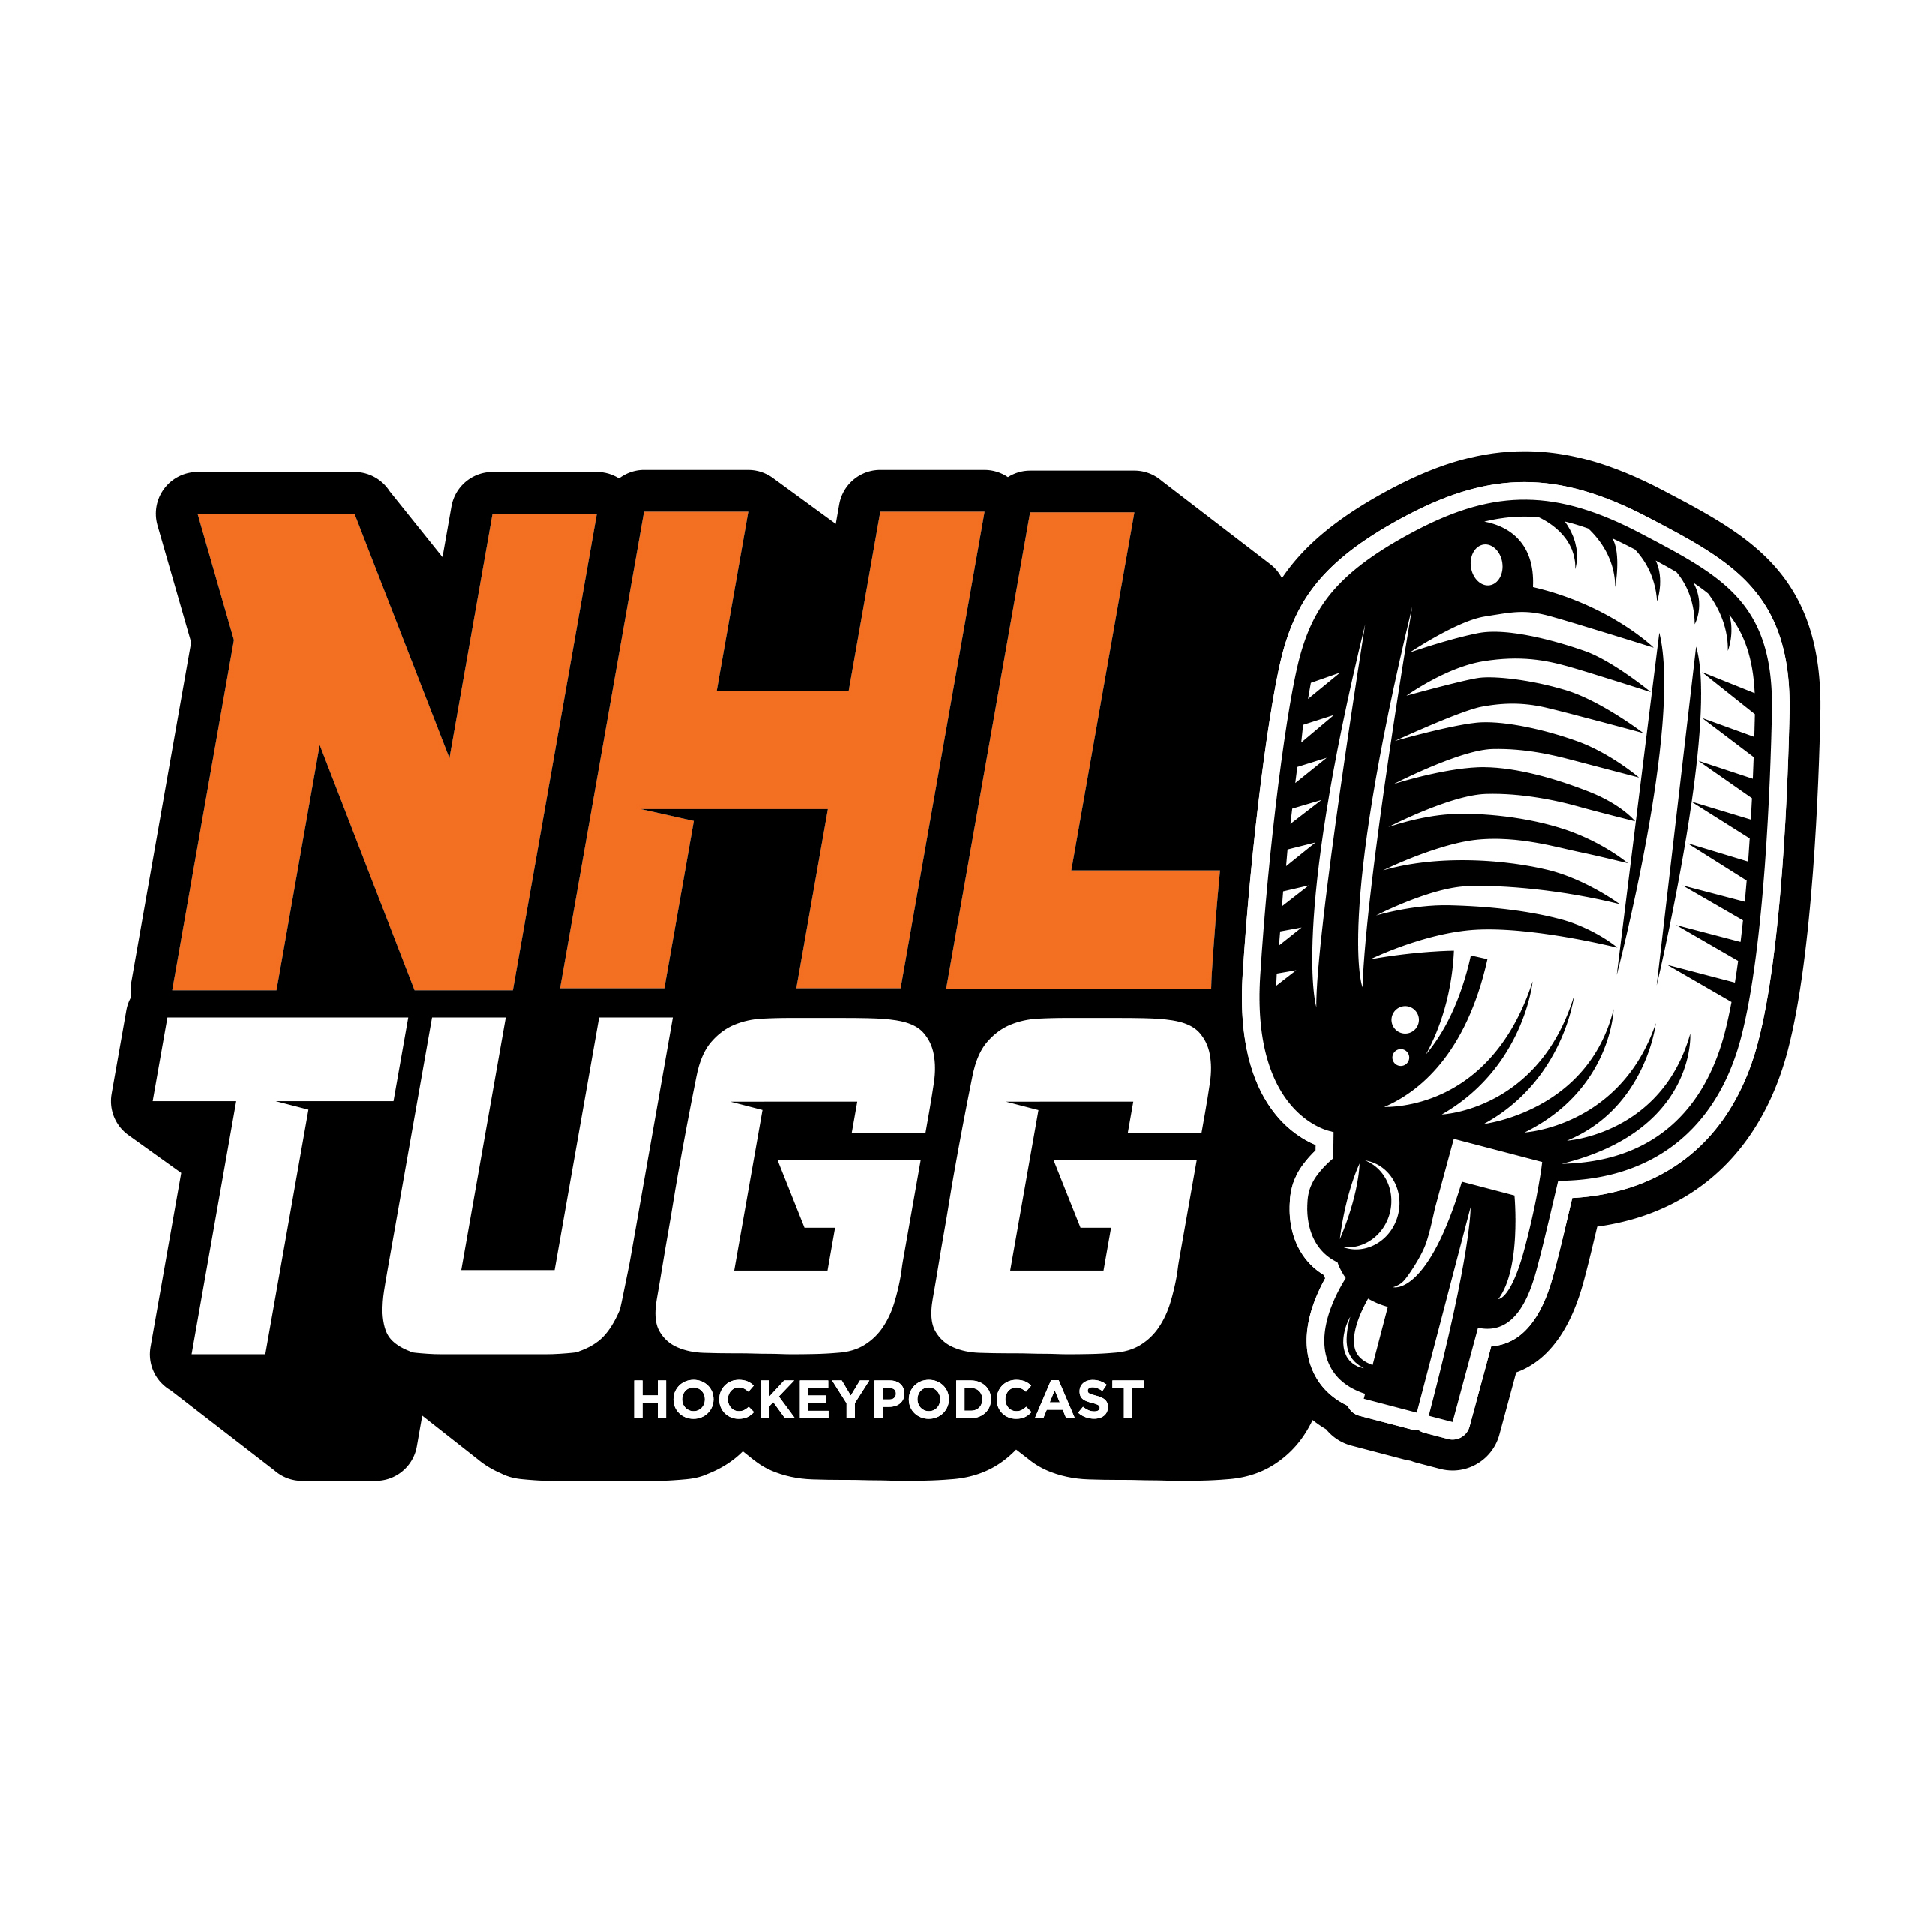 NHL-Tugg avsnitt 78 “Det ska vara en tuff sport”